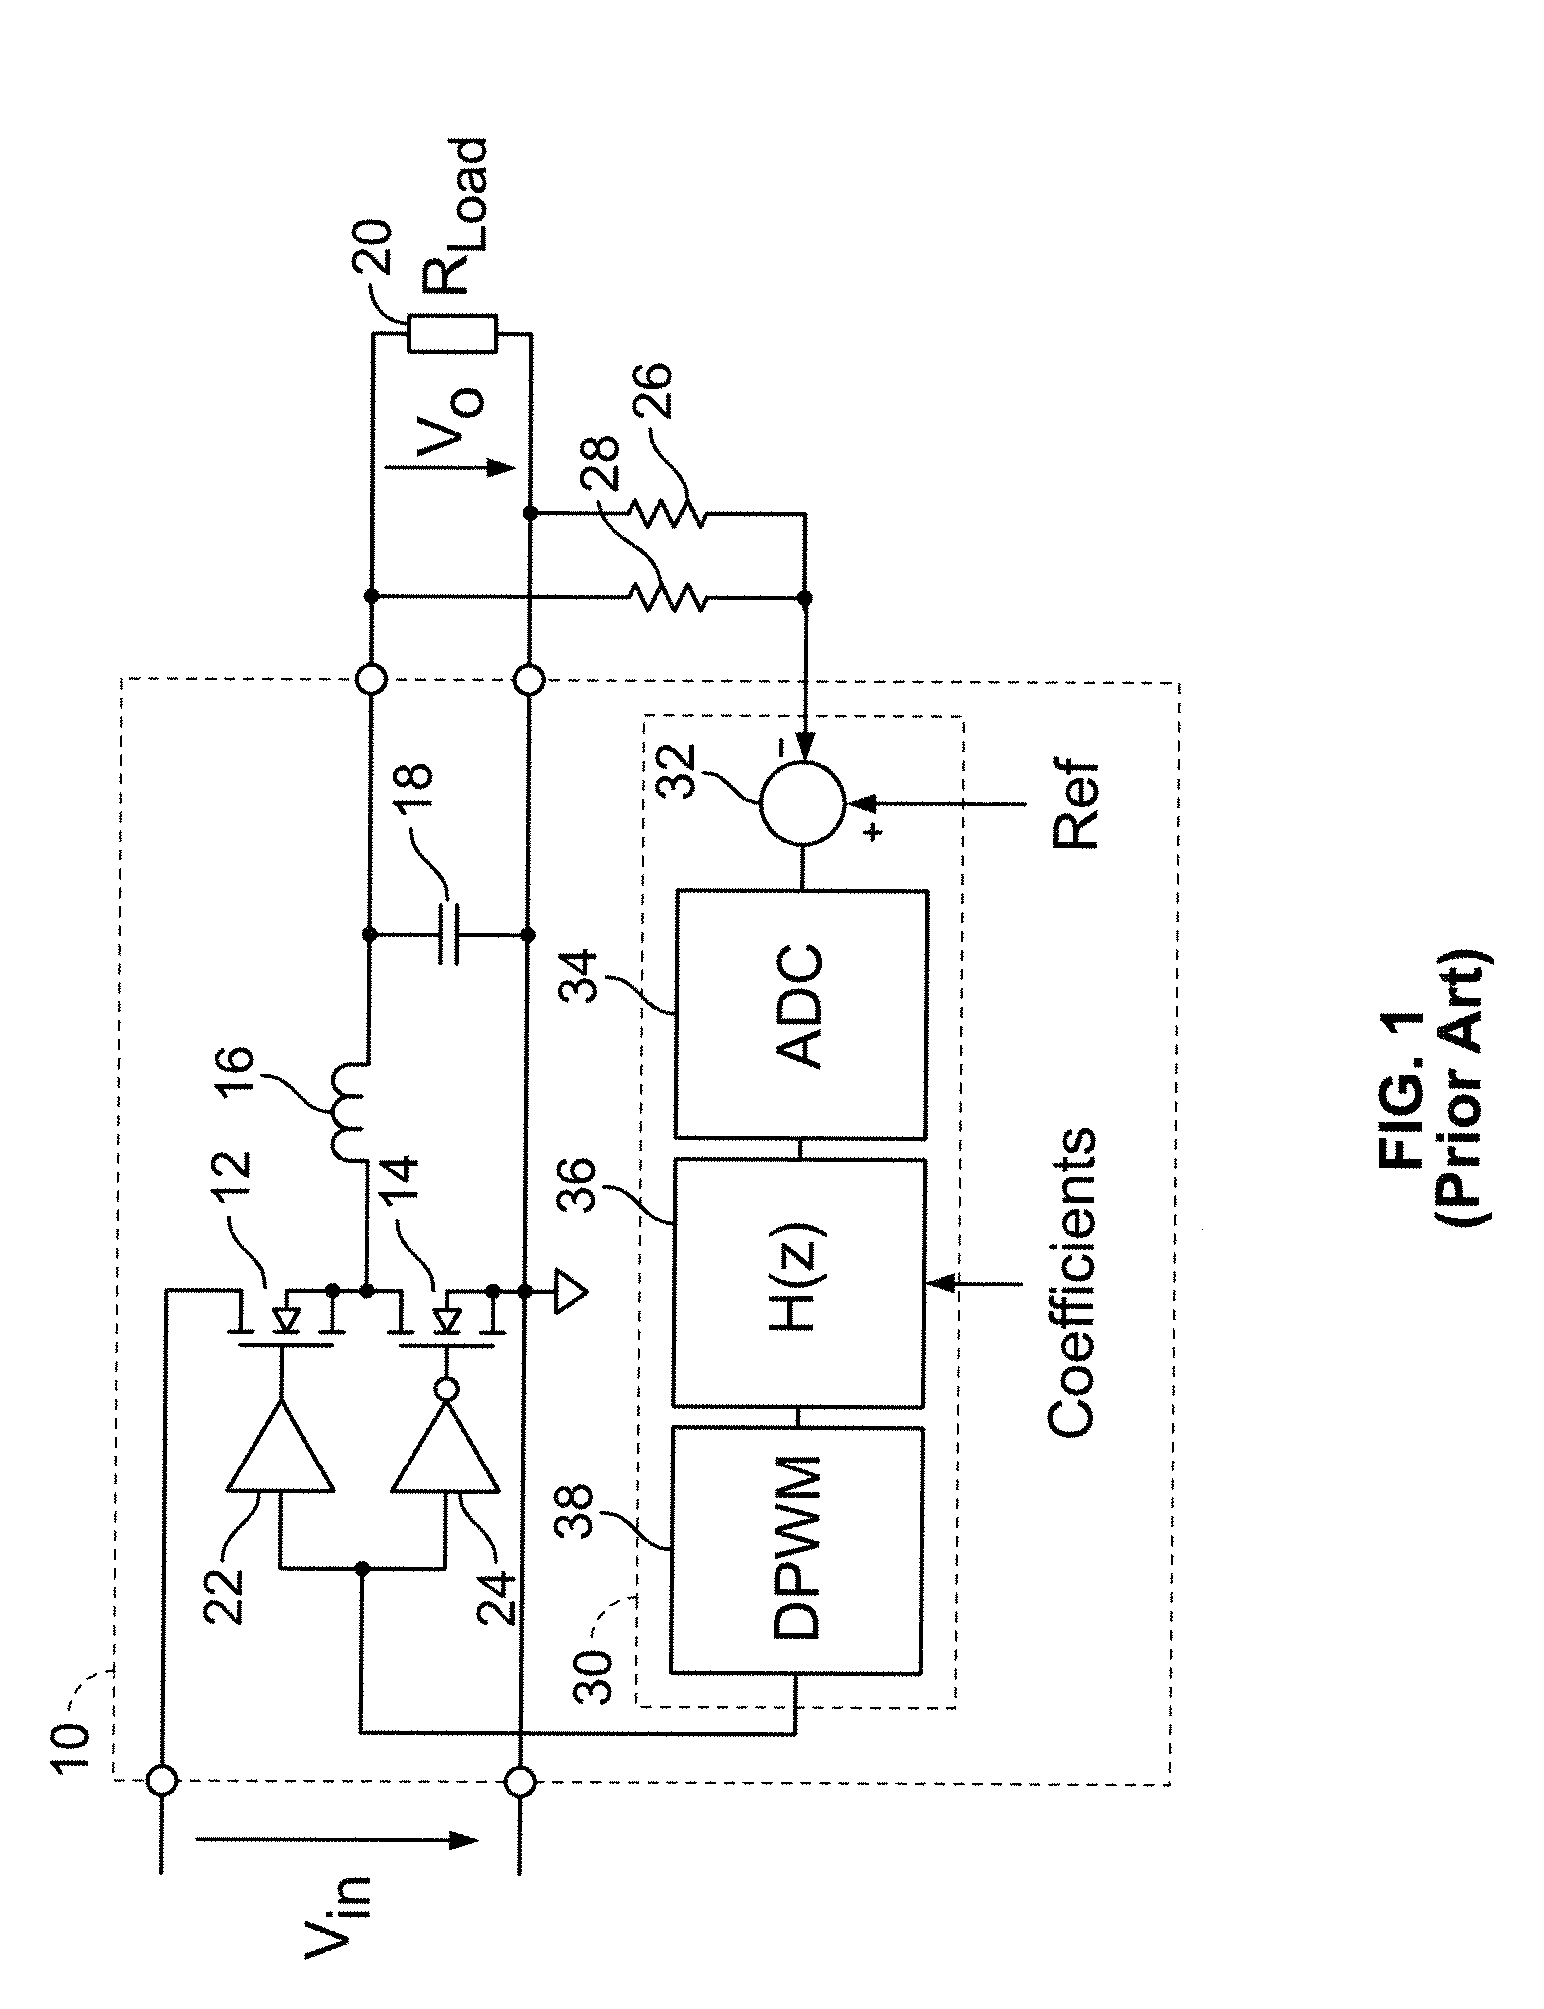 Digital double-loop output voltage regulation